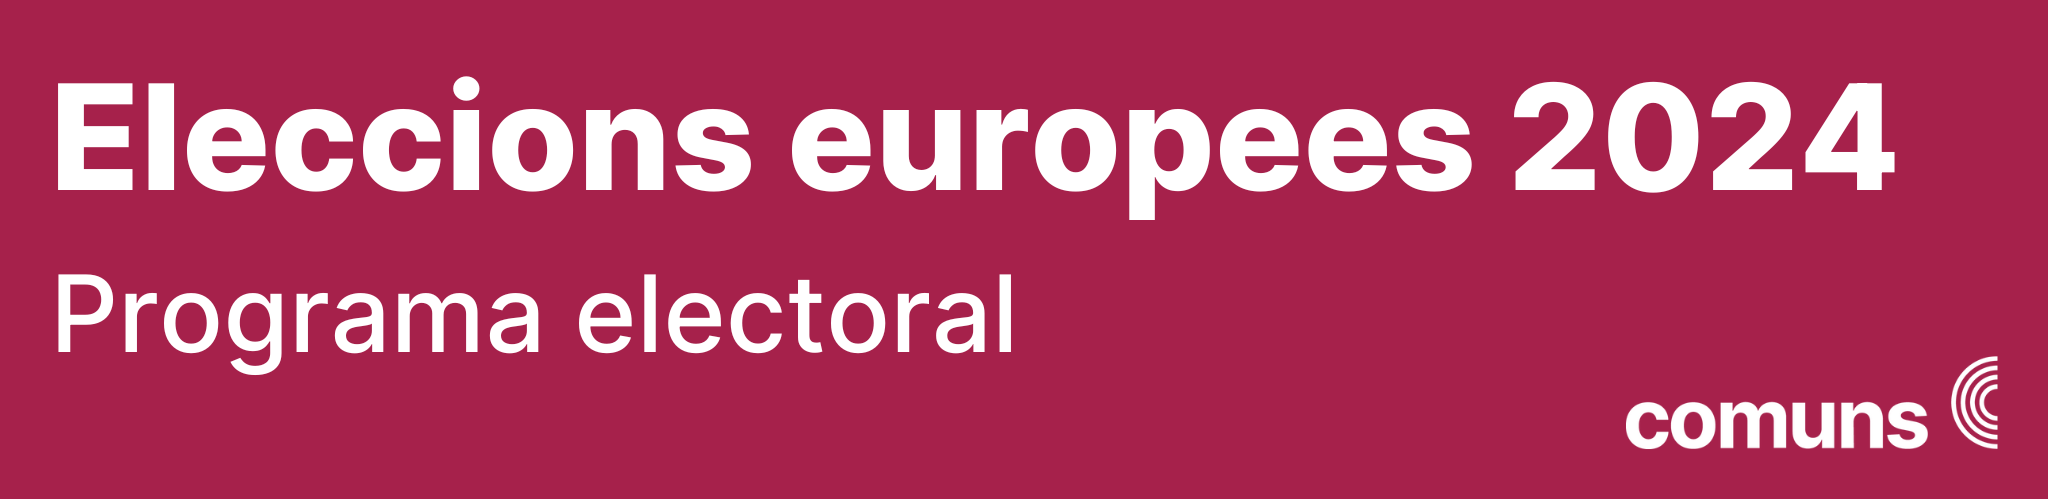  Eleccions europees 2024, programa electoral